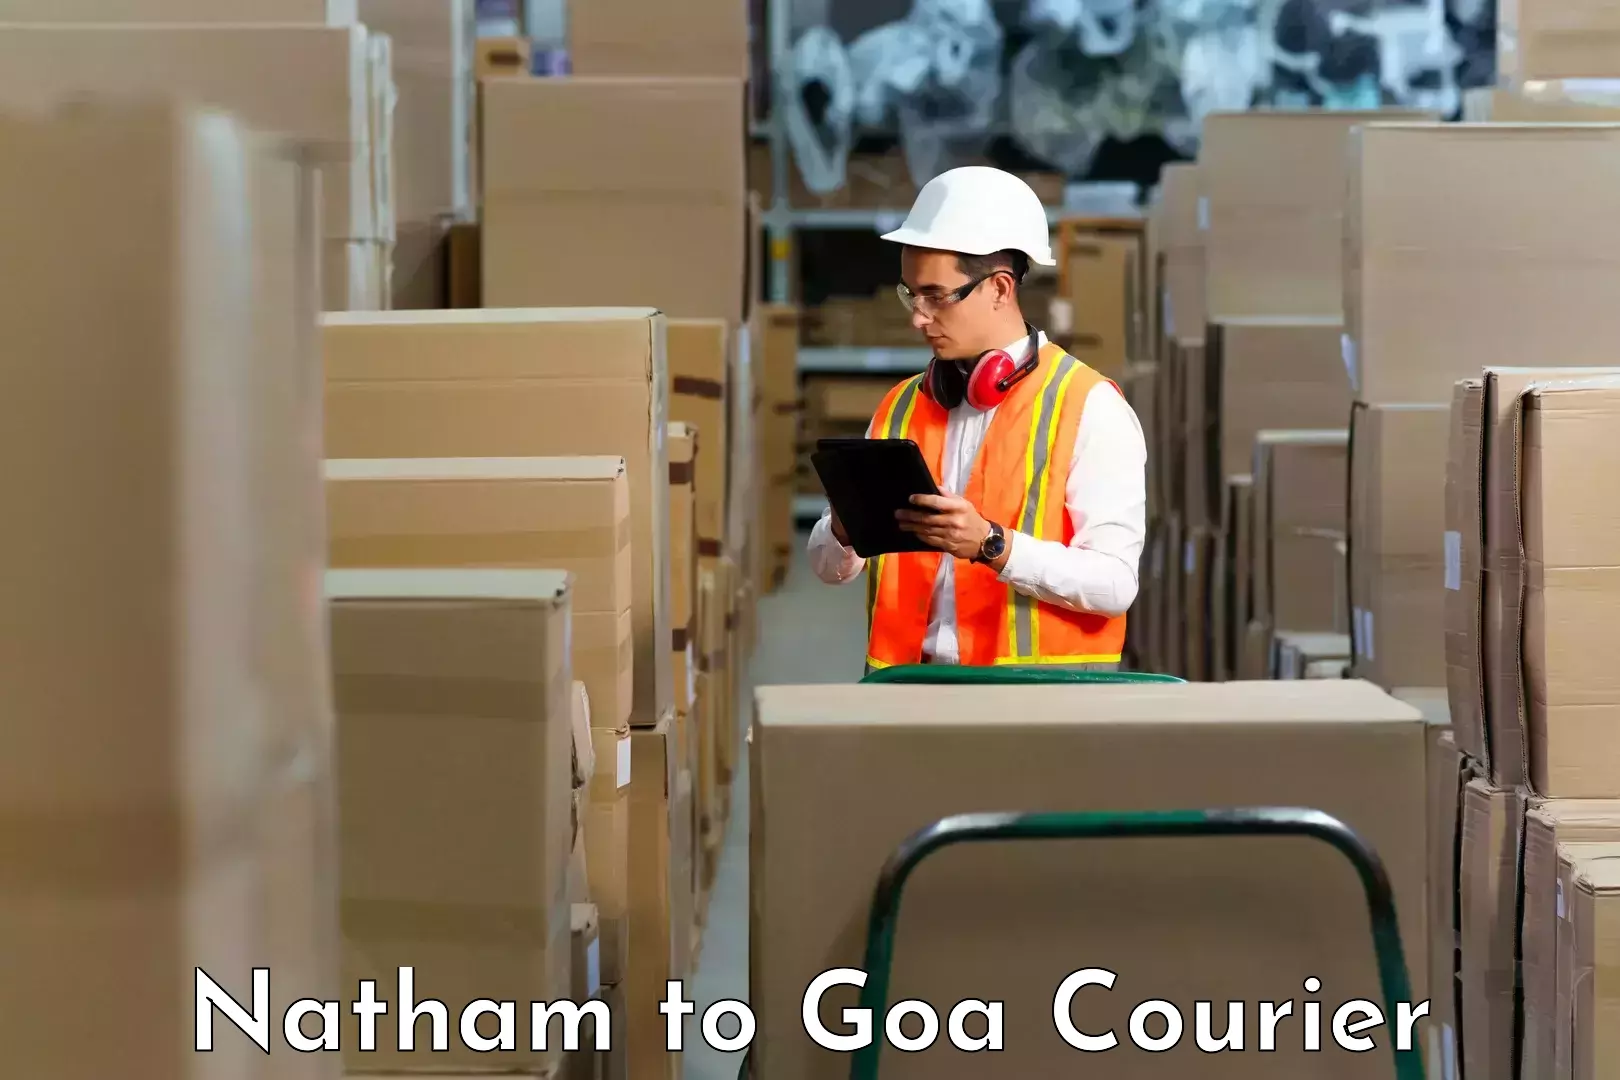 Efficient courier operations Natham to Mormugao Port